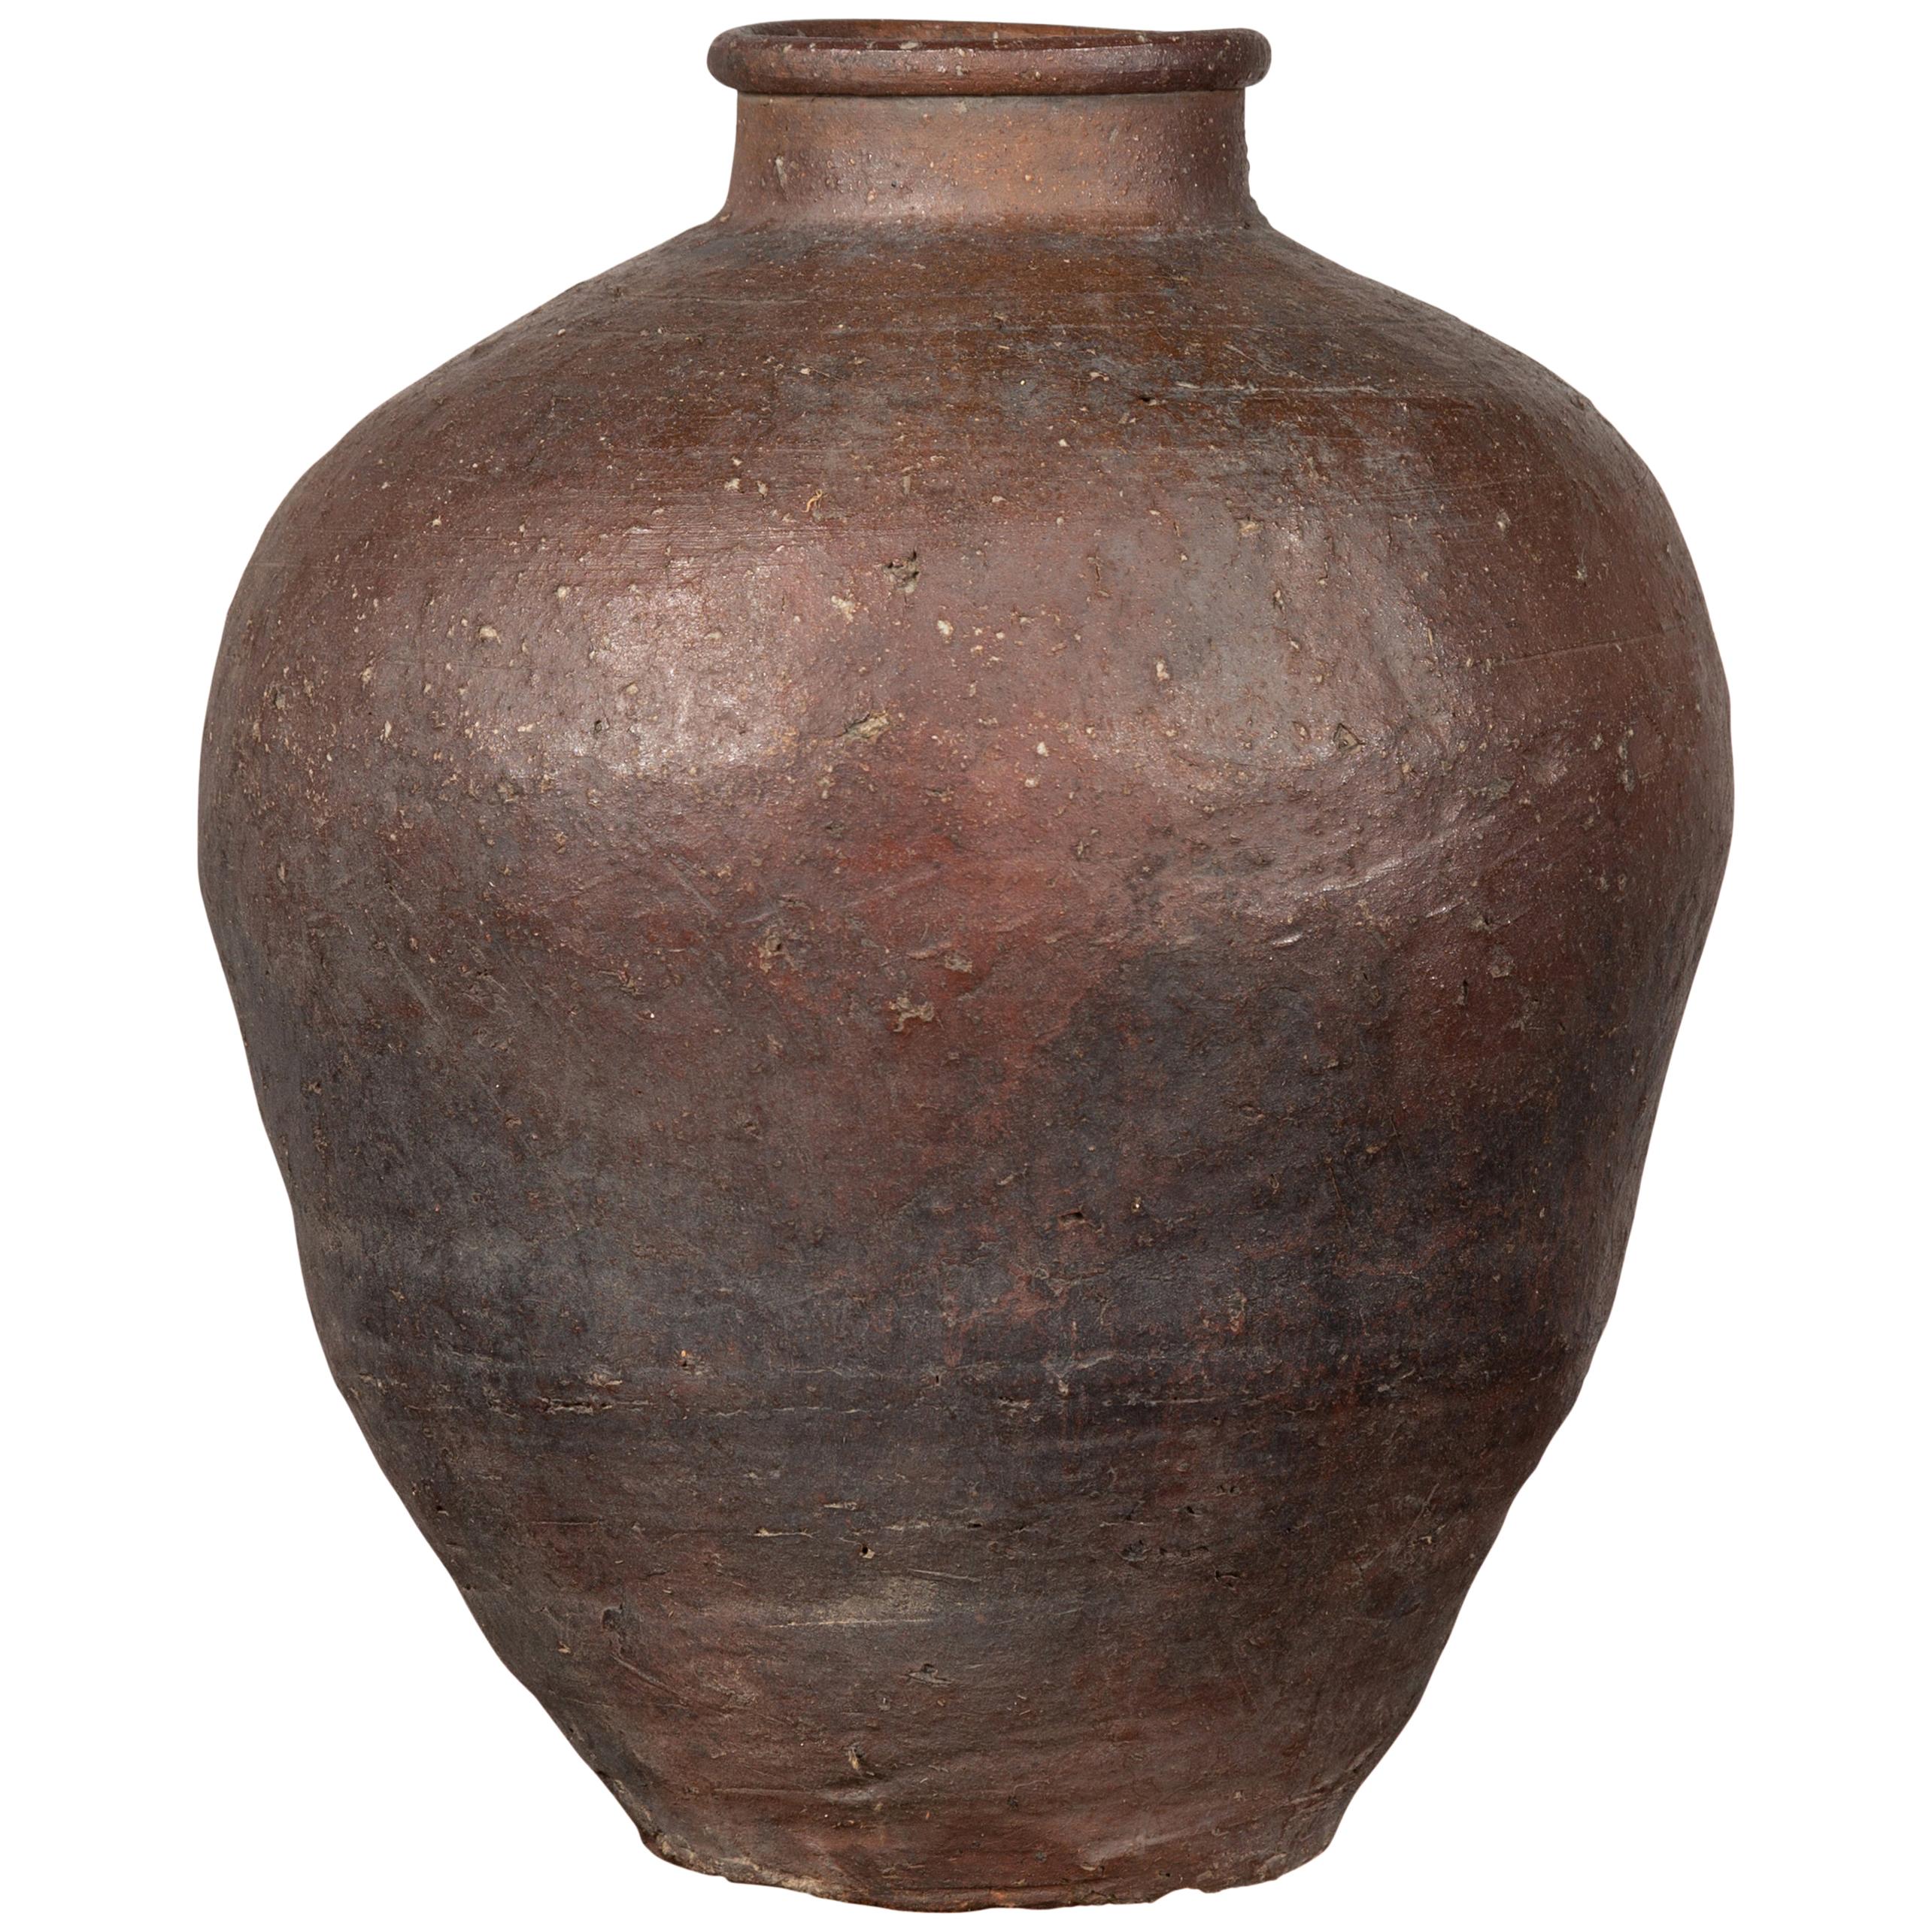 Antike chinesische braune Urne aus dem 19. Jahrhundert mit verwittertem Erscheinungsbild aus dem 19. Jahrhundert